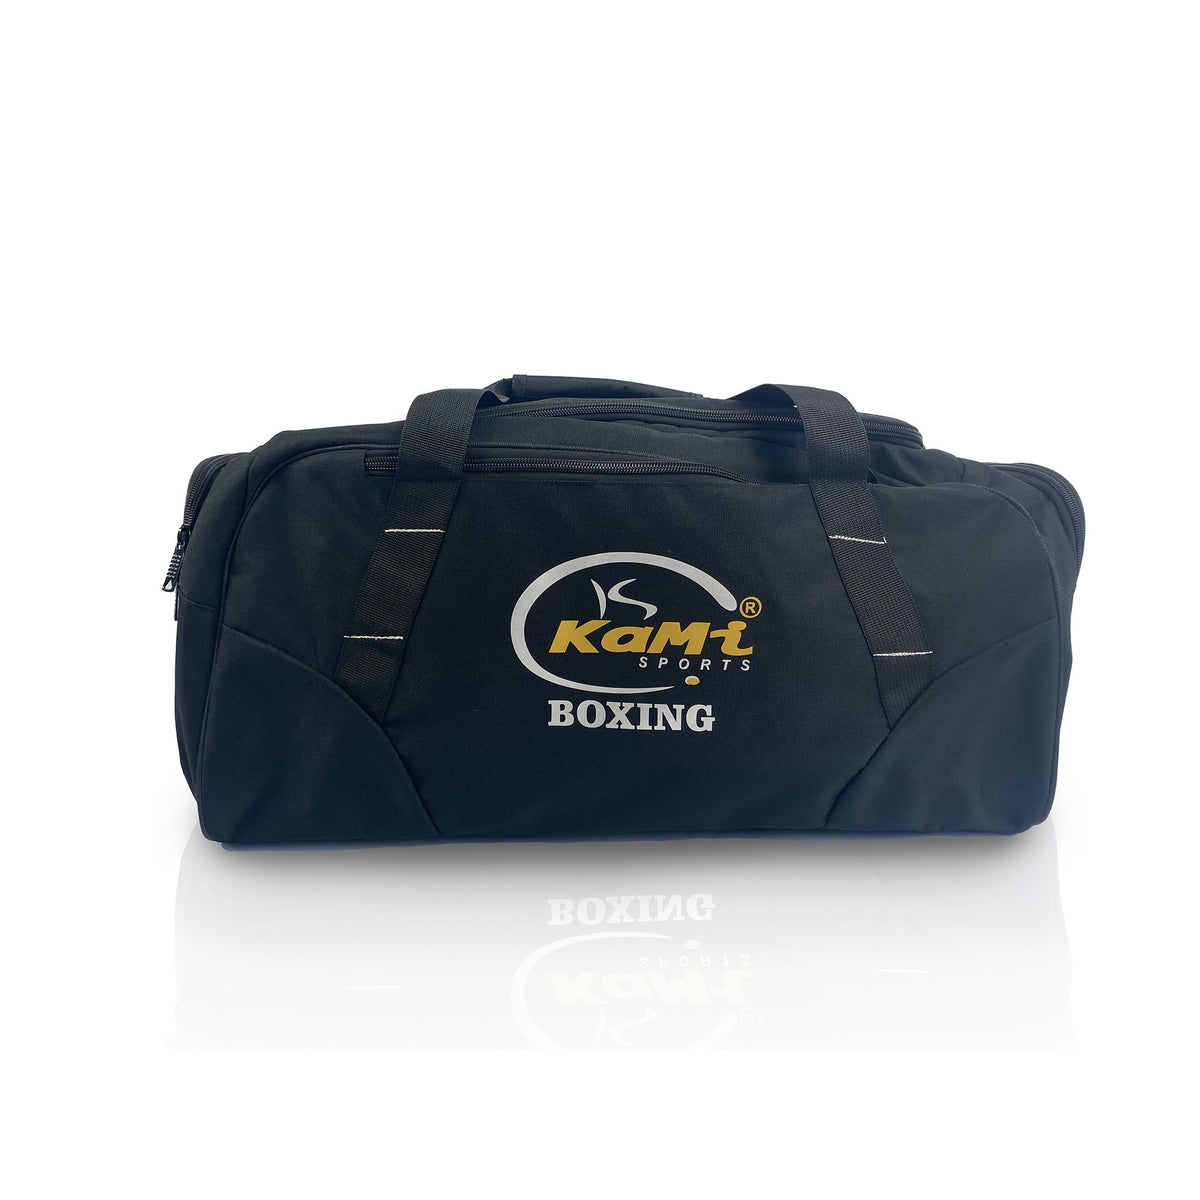 Stilvolle schwarze Sporttasche mit Logo und &#39;Boxing&#39;-Aufdruck, geräumig, praktisch, individuelles Design, robust und wasserfest.